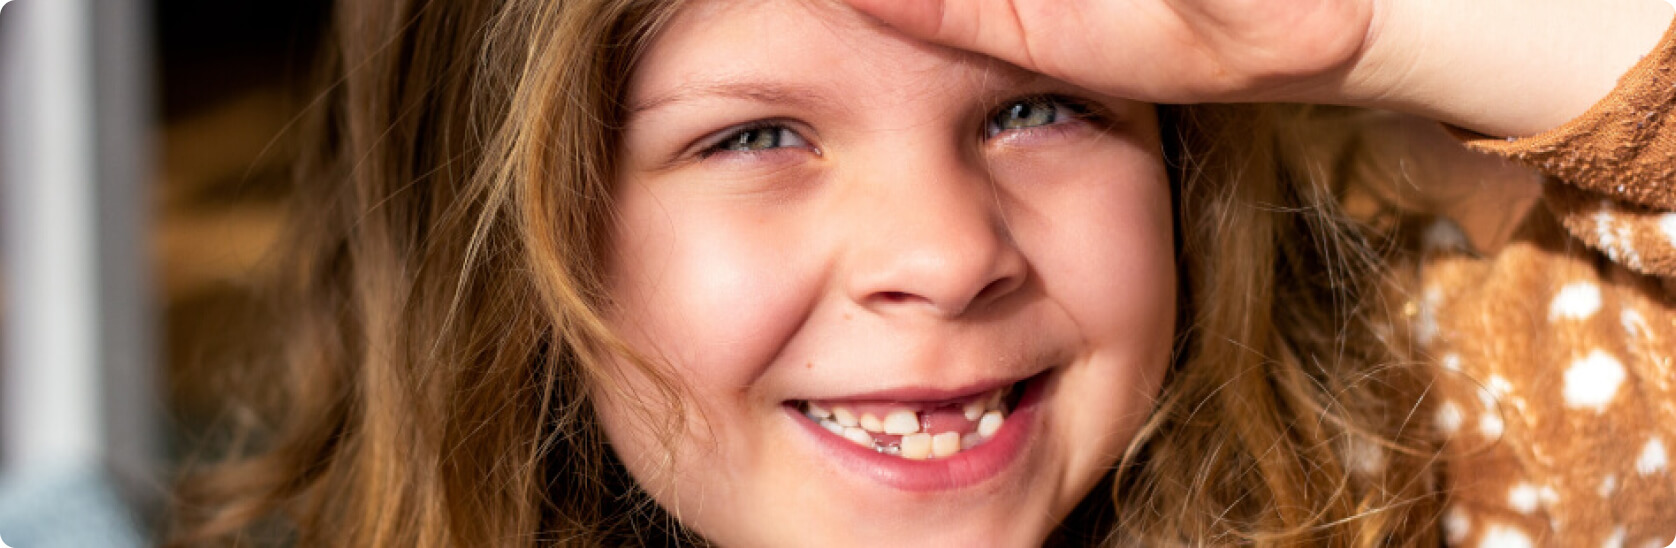 Schiefe Zähne - Wie lassen sich schiefe Zähne bei Kindern behandeln?